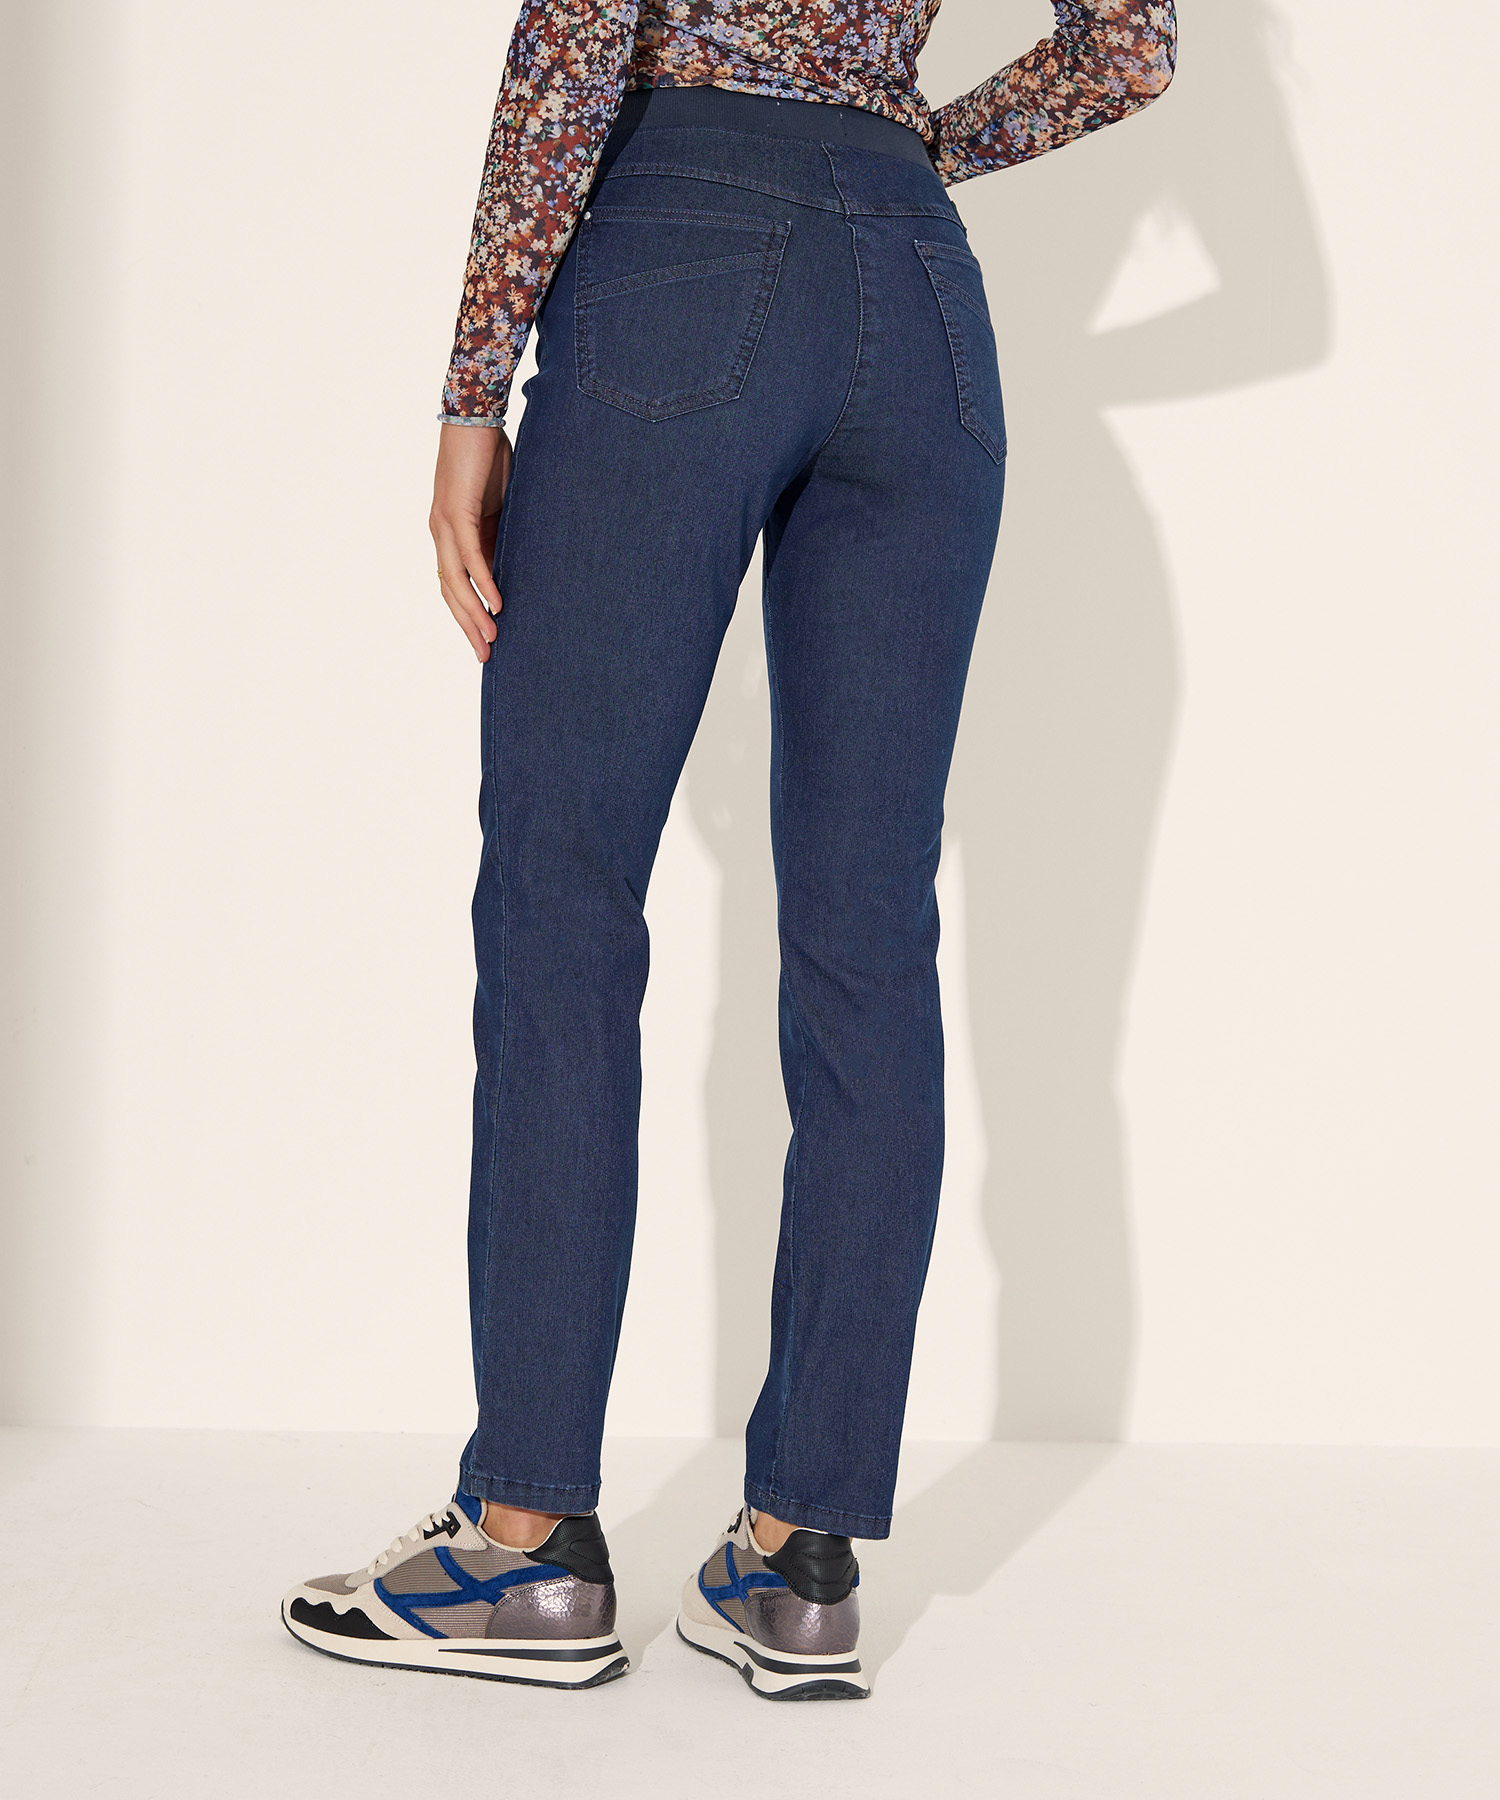 Jeans Pamina geschnittene schmal By Brax jeans von Raphaela